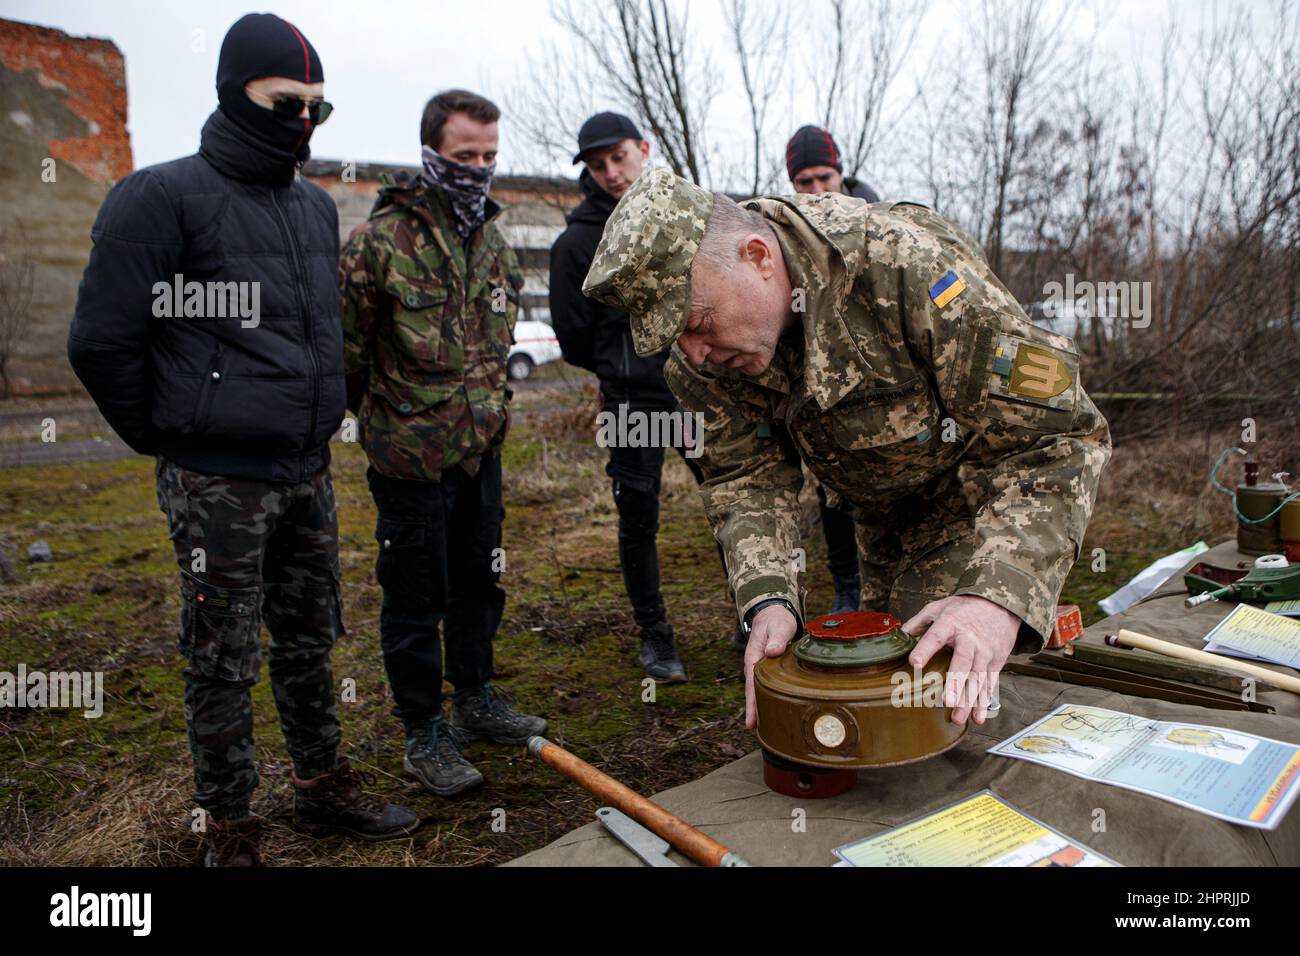 SIURTE, UKRAINE - 19. FEBRUAR 2022 - ein Ausbilder demonstriert eine Mine während einer militärischen Übung für Zivilisten, die von der Bewegung des Veter durchgeführt wurde Stockfoto